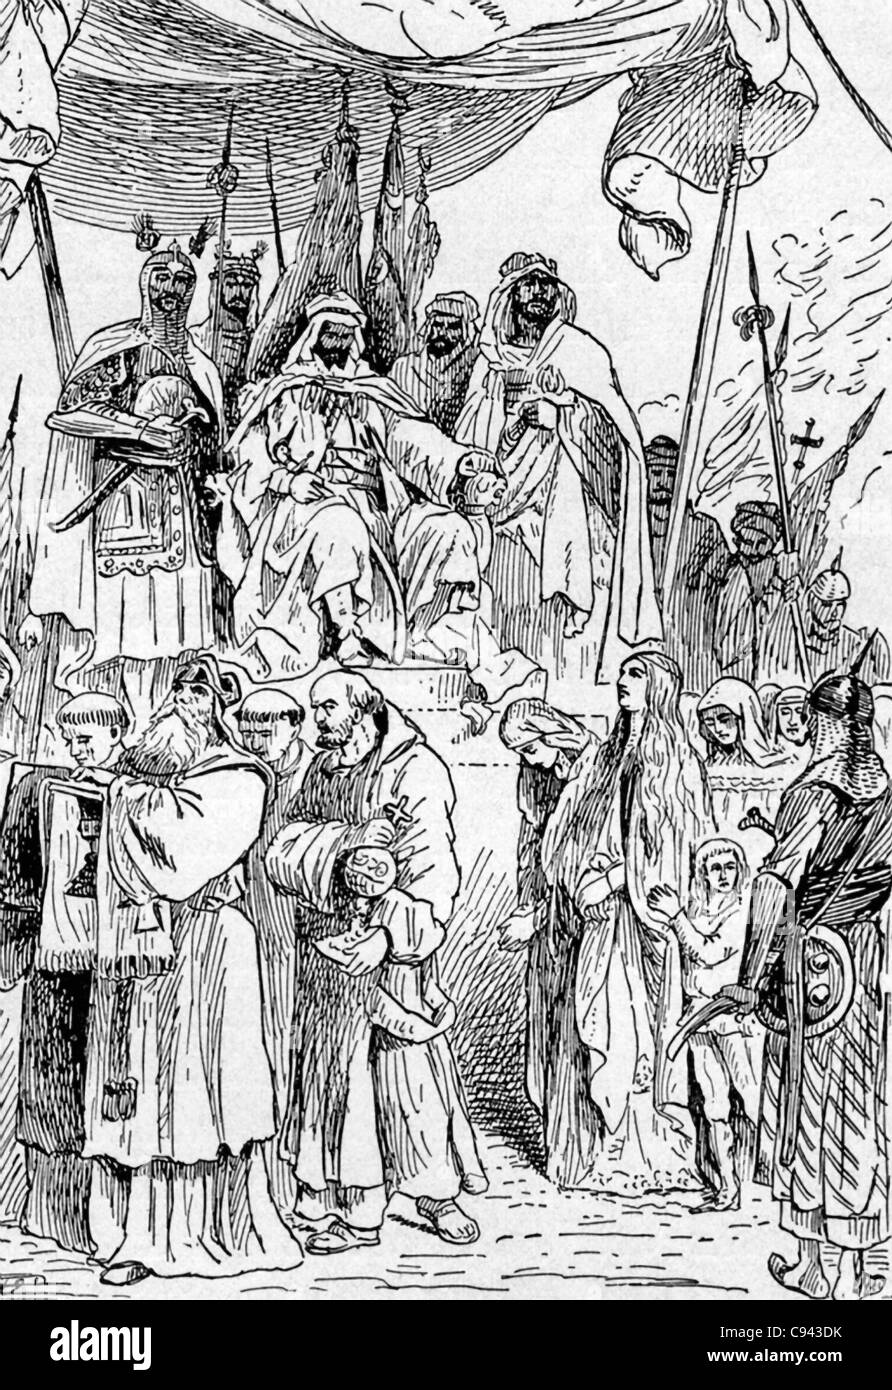 Nach der Eroberung von Jerusalem (1187) beobachtet Saladin, wie Christen Datei durch - er hatte zugestimmt, dass Christen sich erpressen könnte Stockfoto